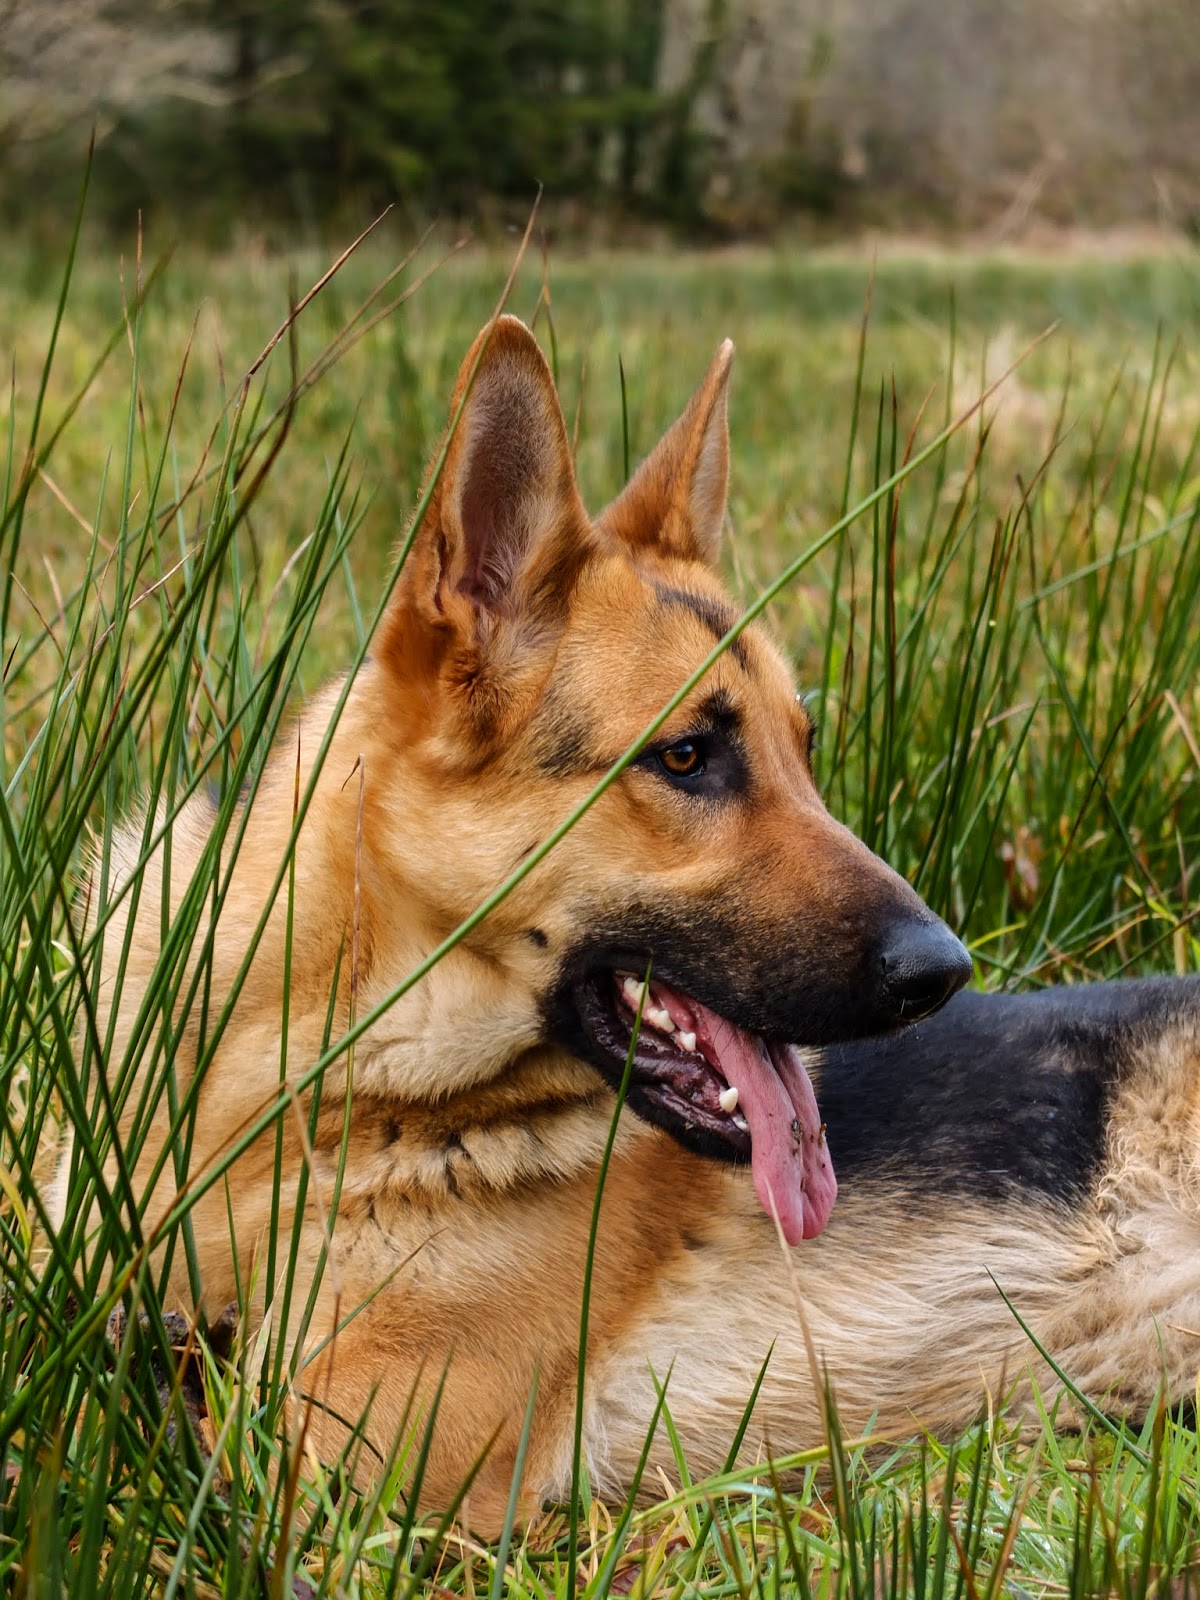 Profile of German Shepherd Nala lying in tall grass in a field.